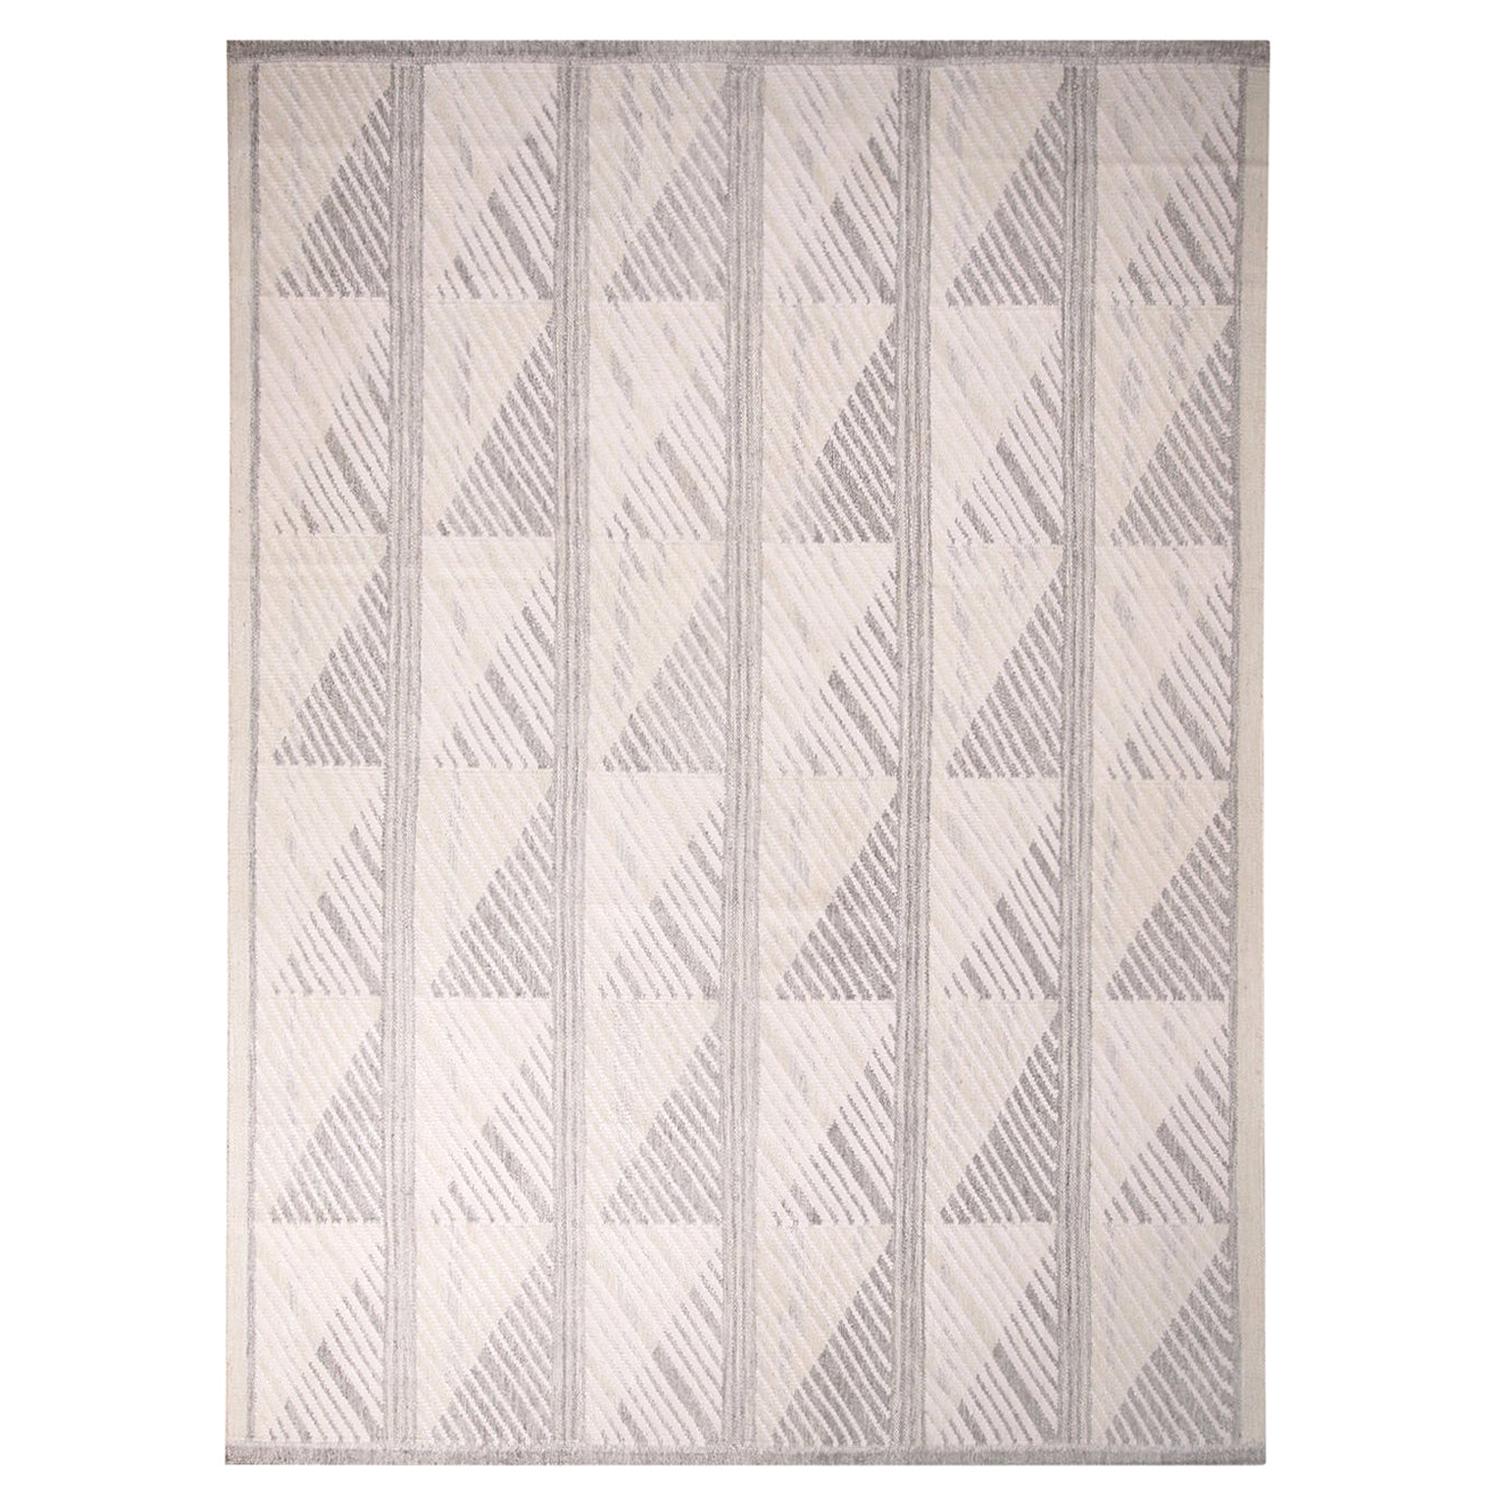 Skandinavisch inspirierter geometrischer grau-weißer Kelim-Teppich aus natürlicher Wolle von Teppich & Kilims